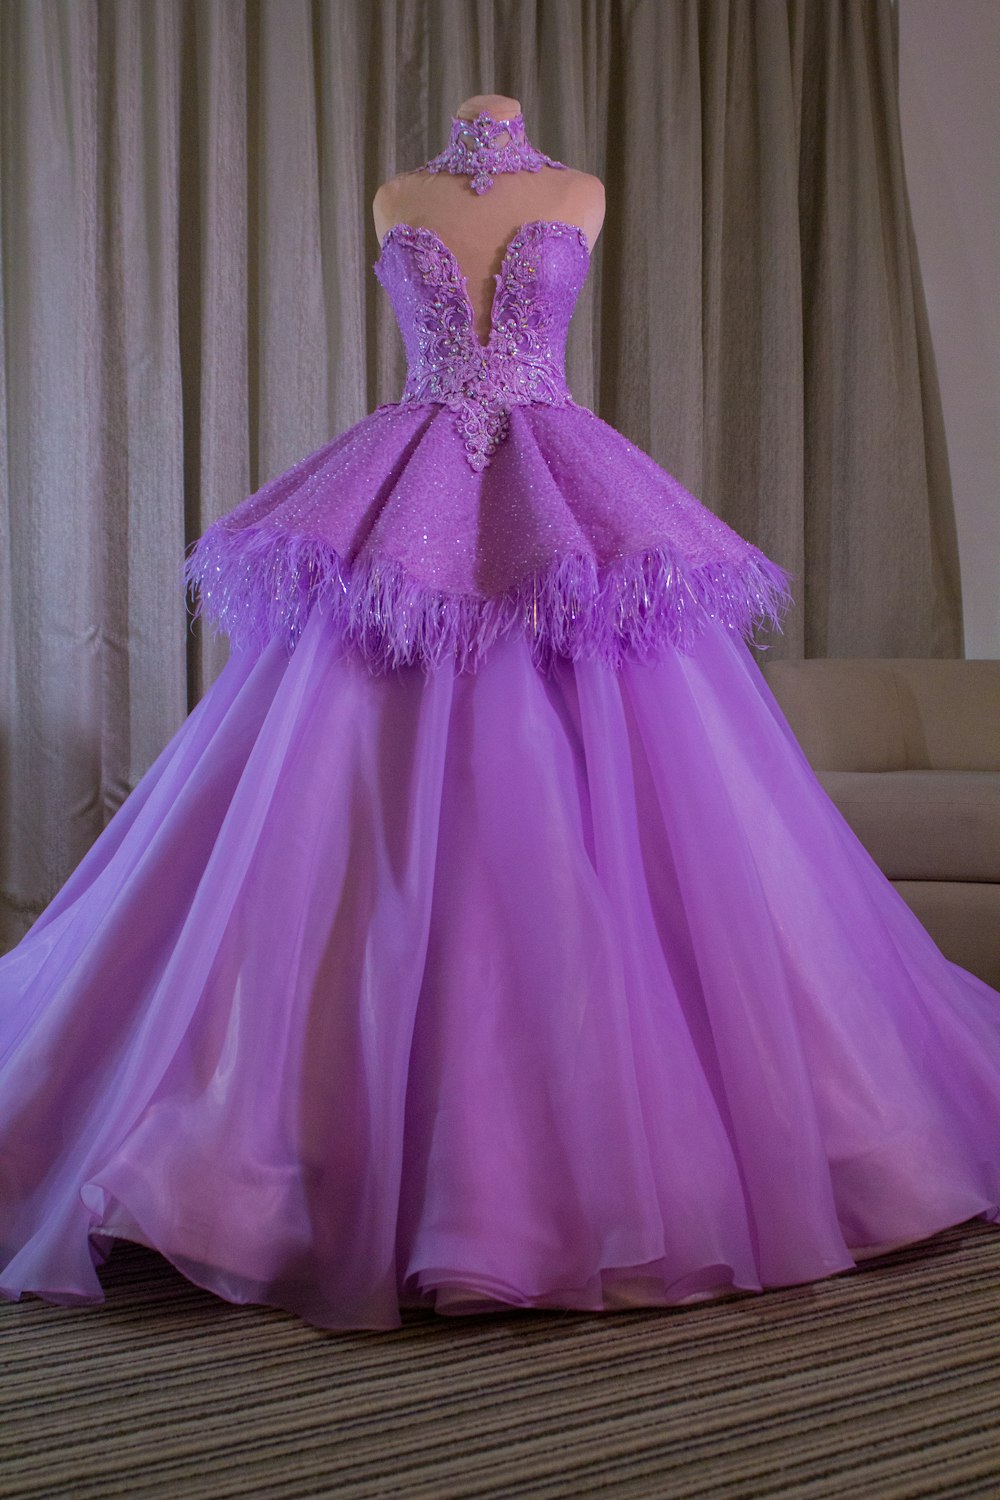 a purple dress on a table